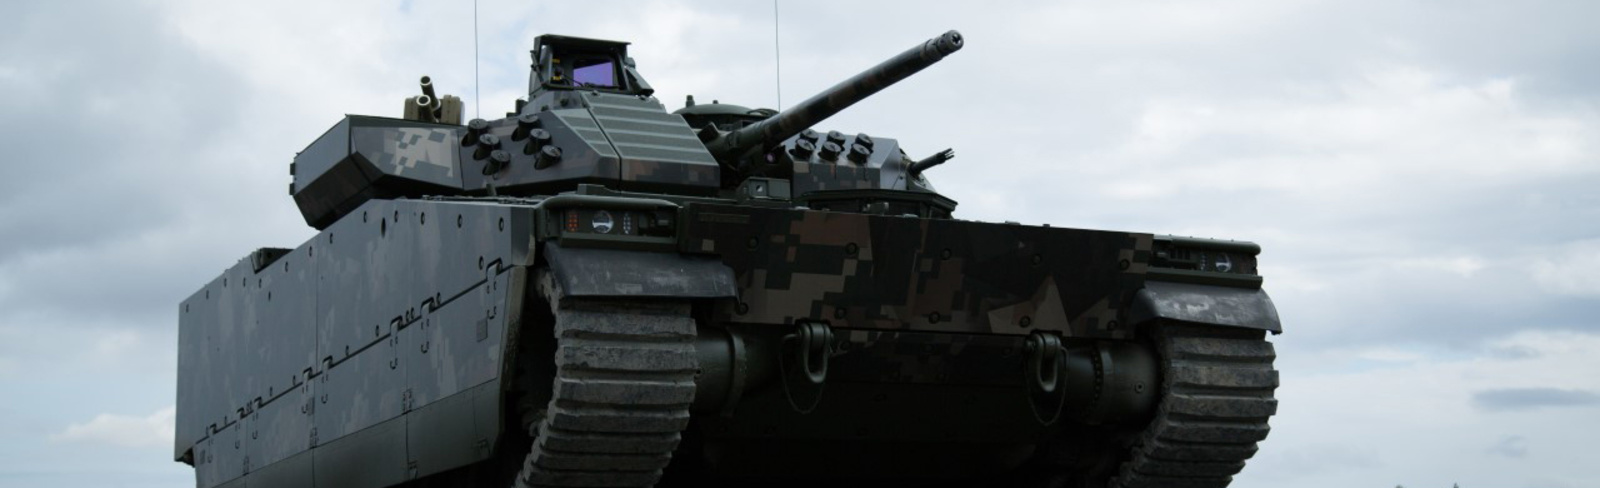 CV90 Czech Mjölner